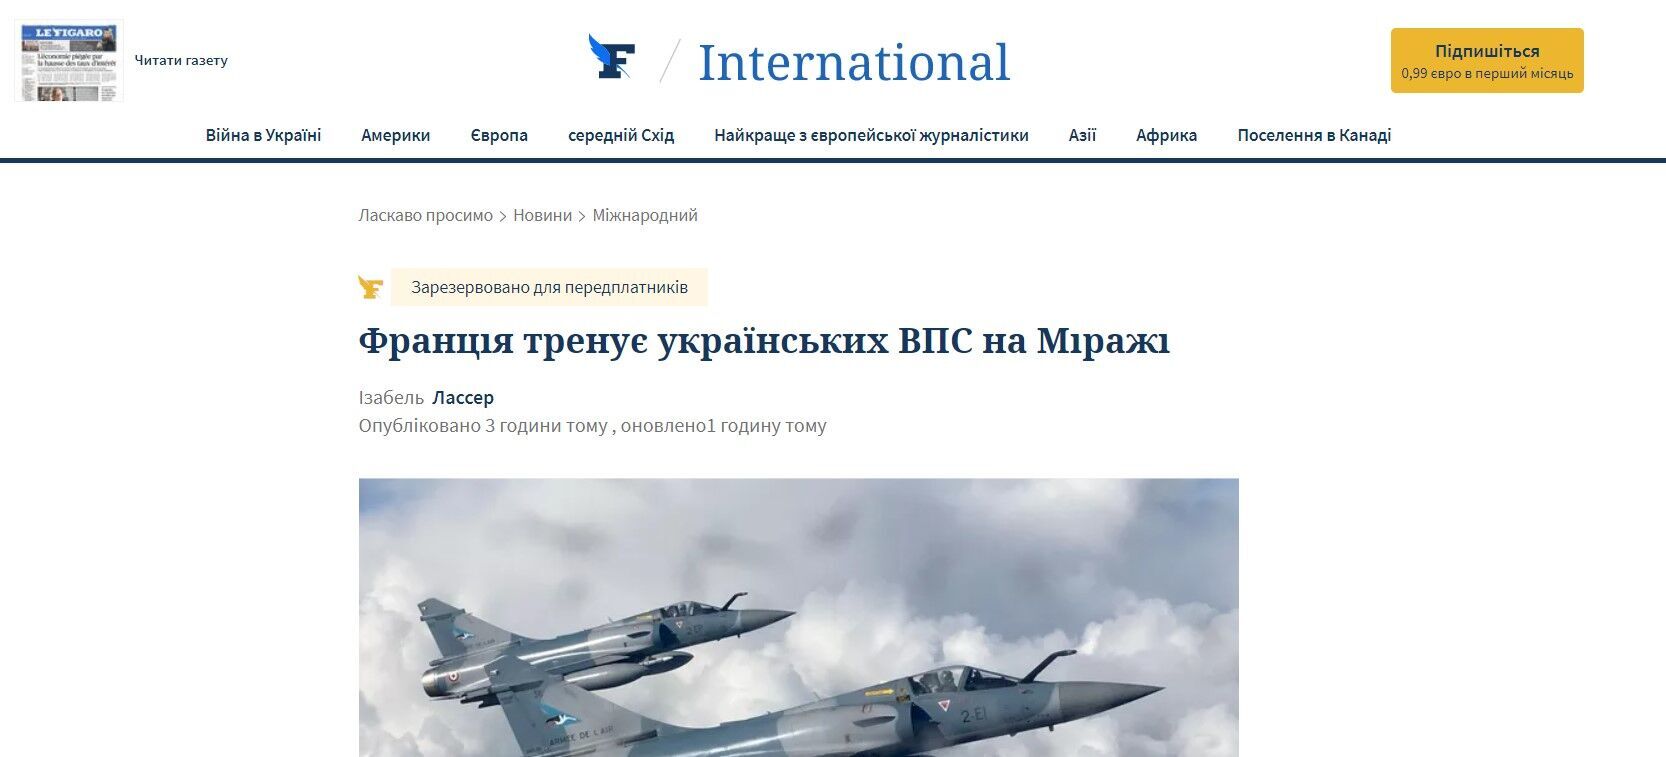 Le Figaro об обучении украинских пилотов на Mirage 2000